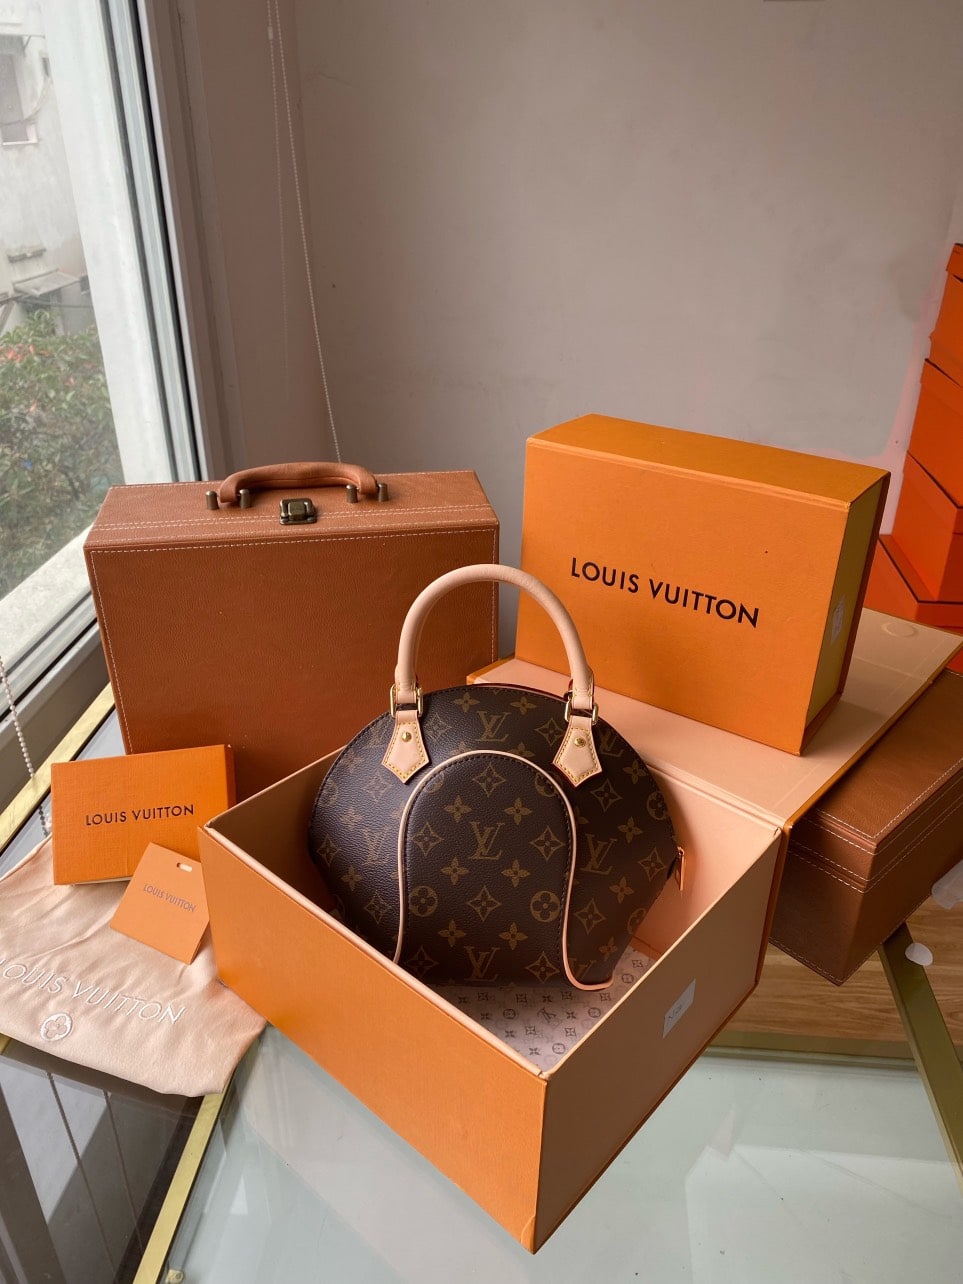 Louis Vuitton Ellipse PM Bag Review  YouTube